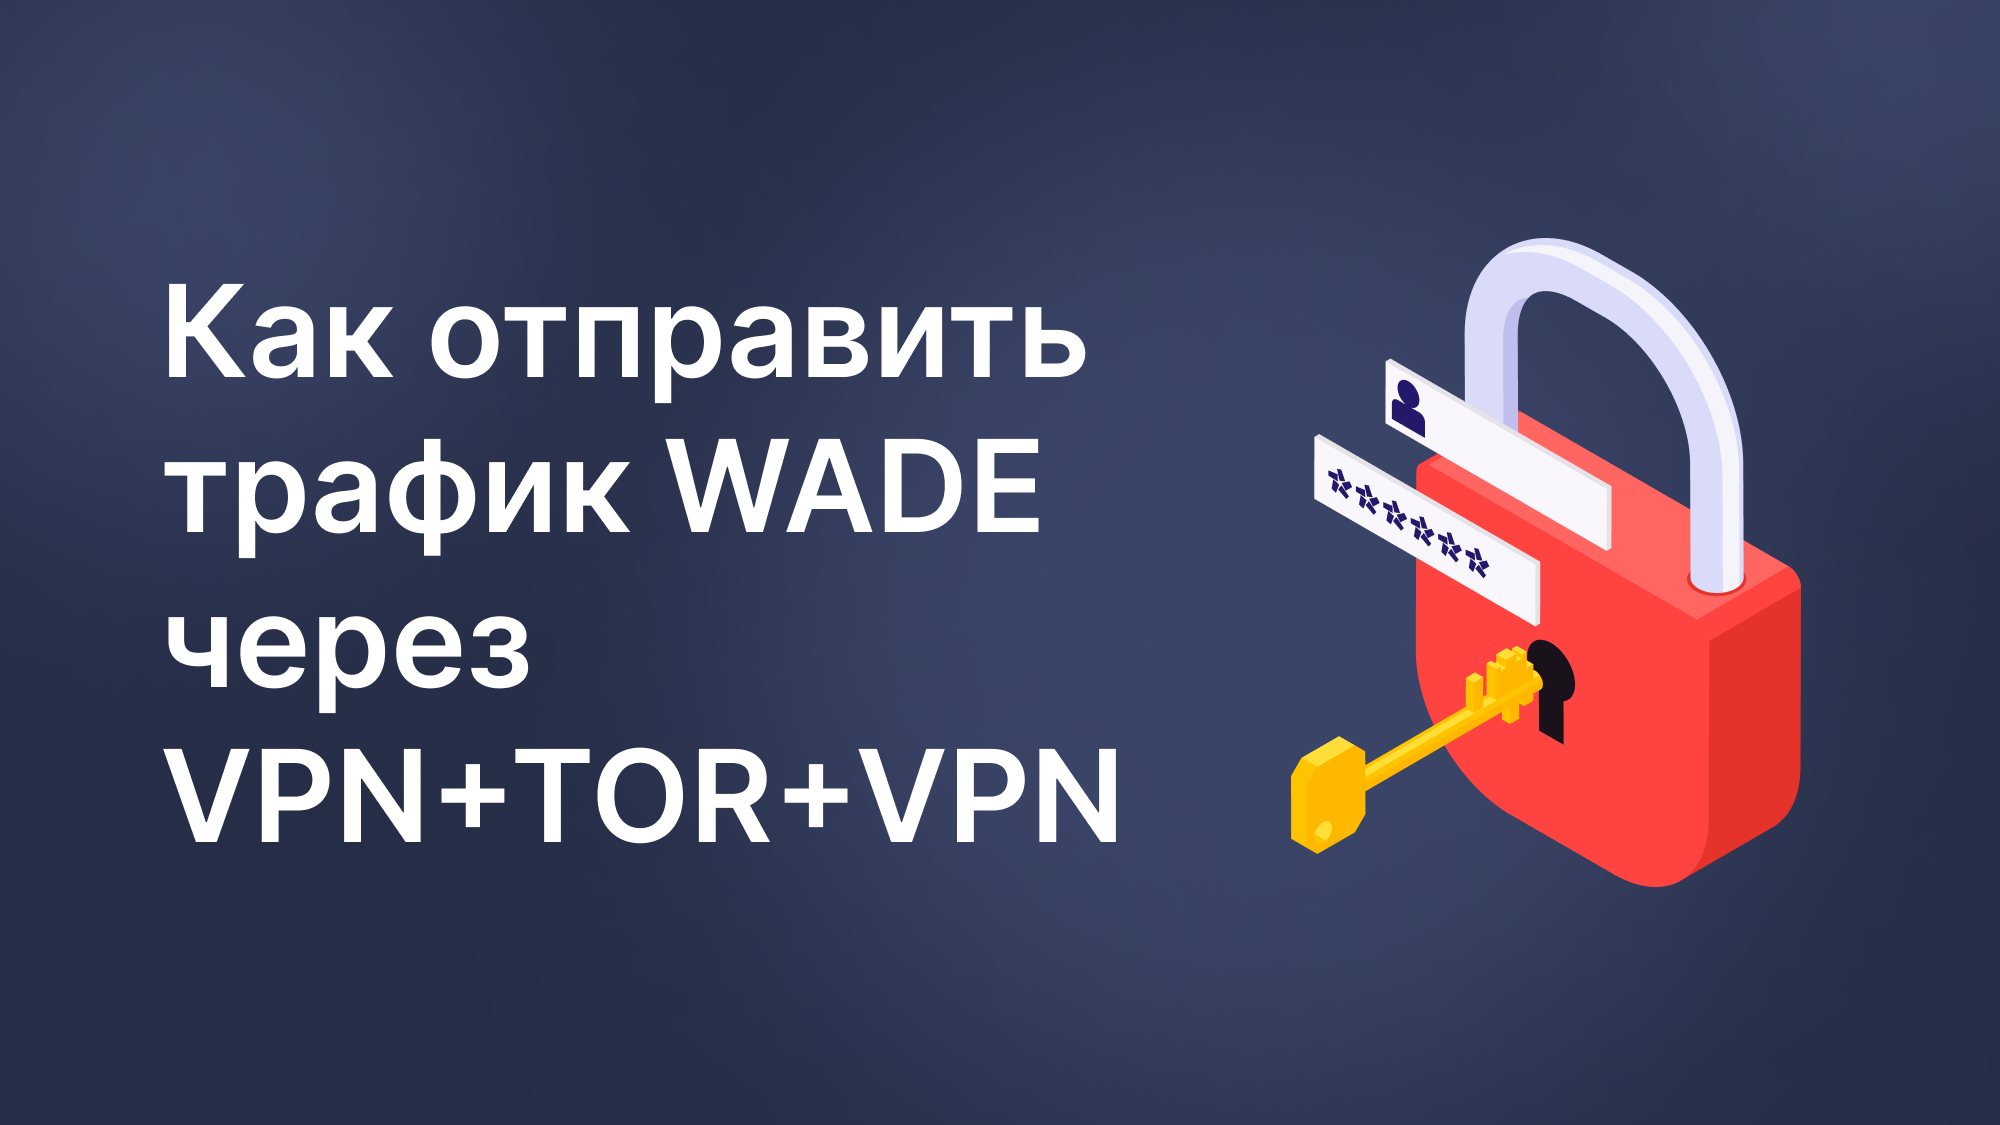 Направляем трафик WADE через VPN+TOR+VPN